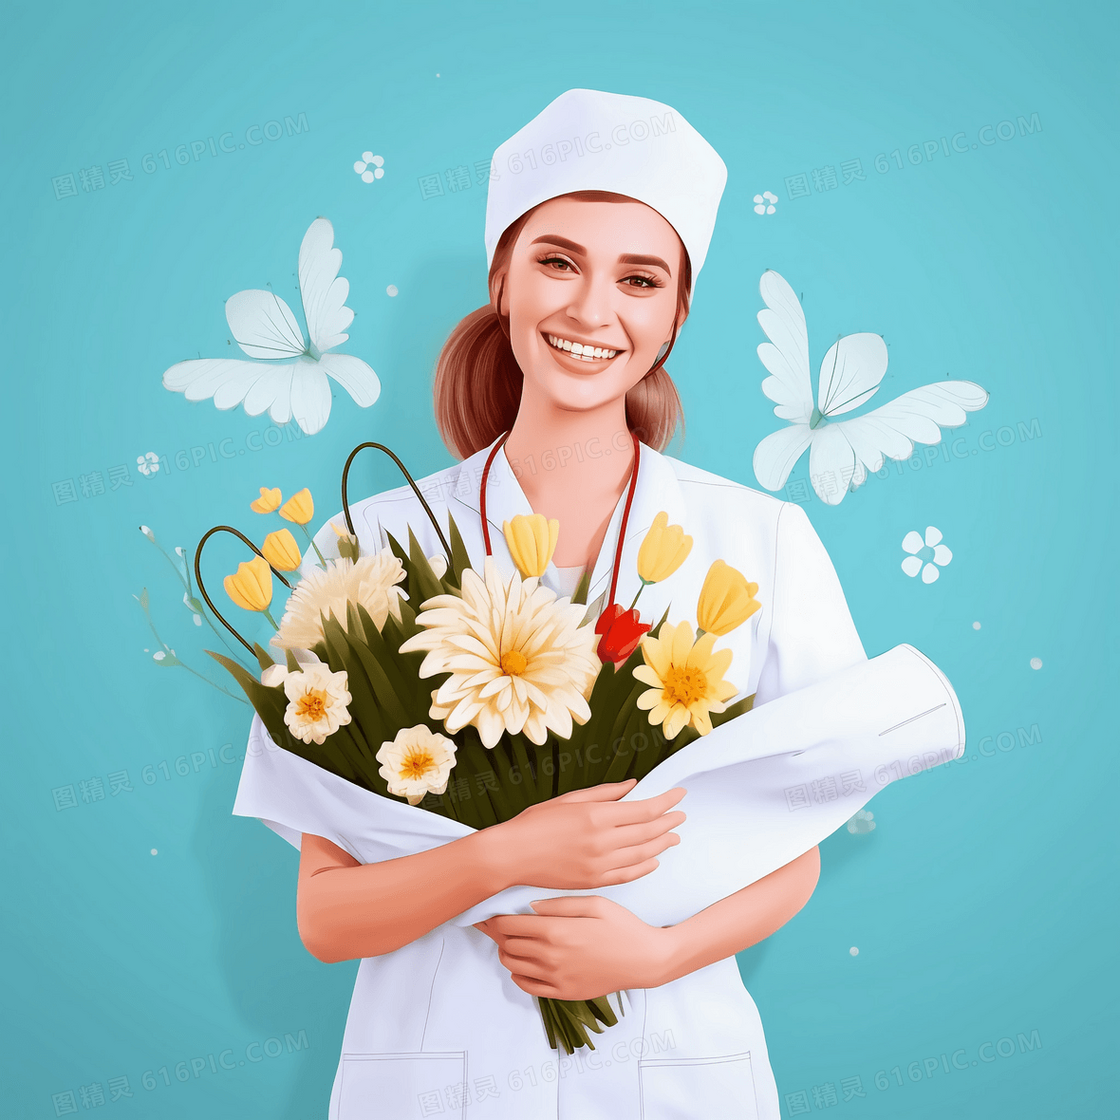 国外身穿白色护士服的护士手捧鲜花开心的笑